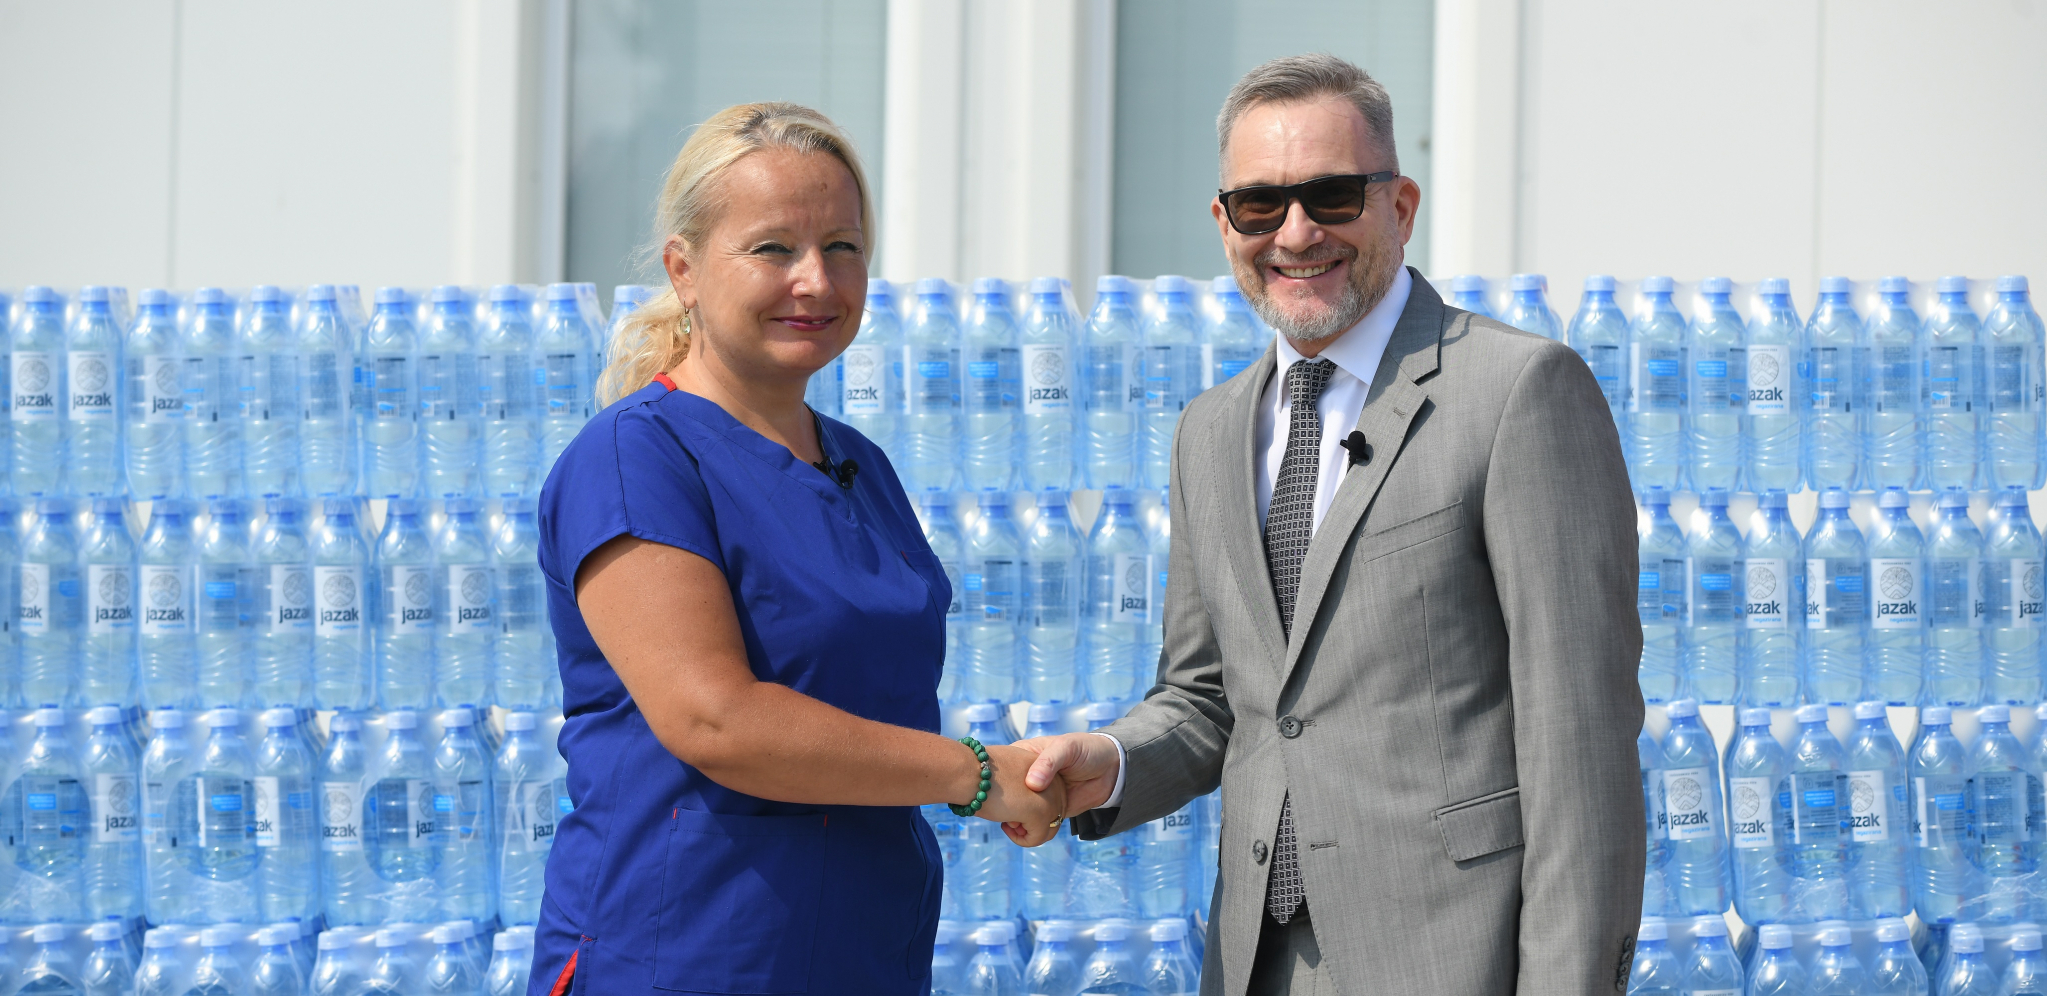 NASTAVLJA SE PODRŠKA ZDRAVSTVU Kompanija NIS donirala vodu "Jazak" bolnici u Batajnici